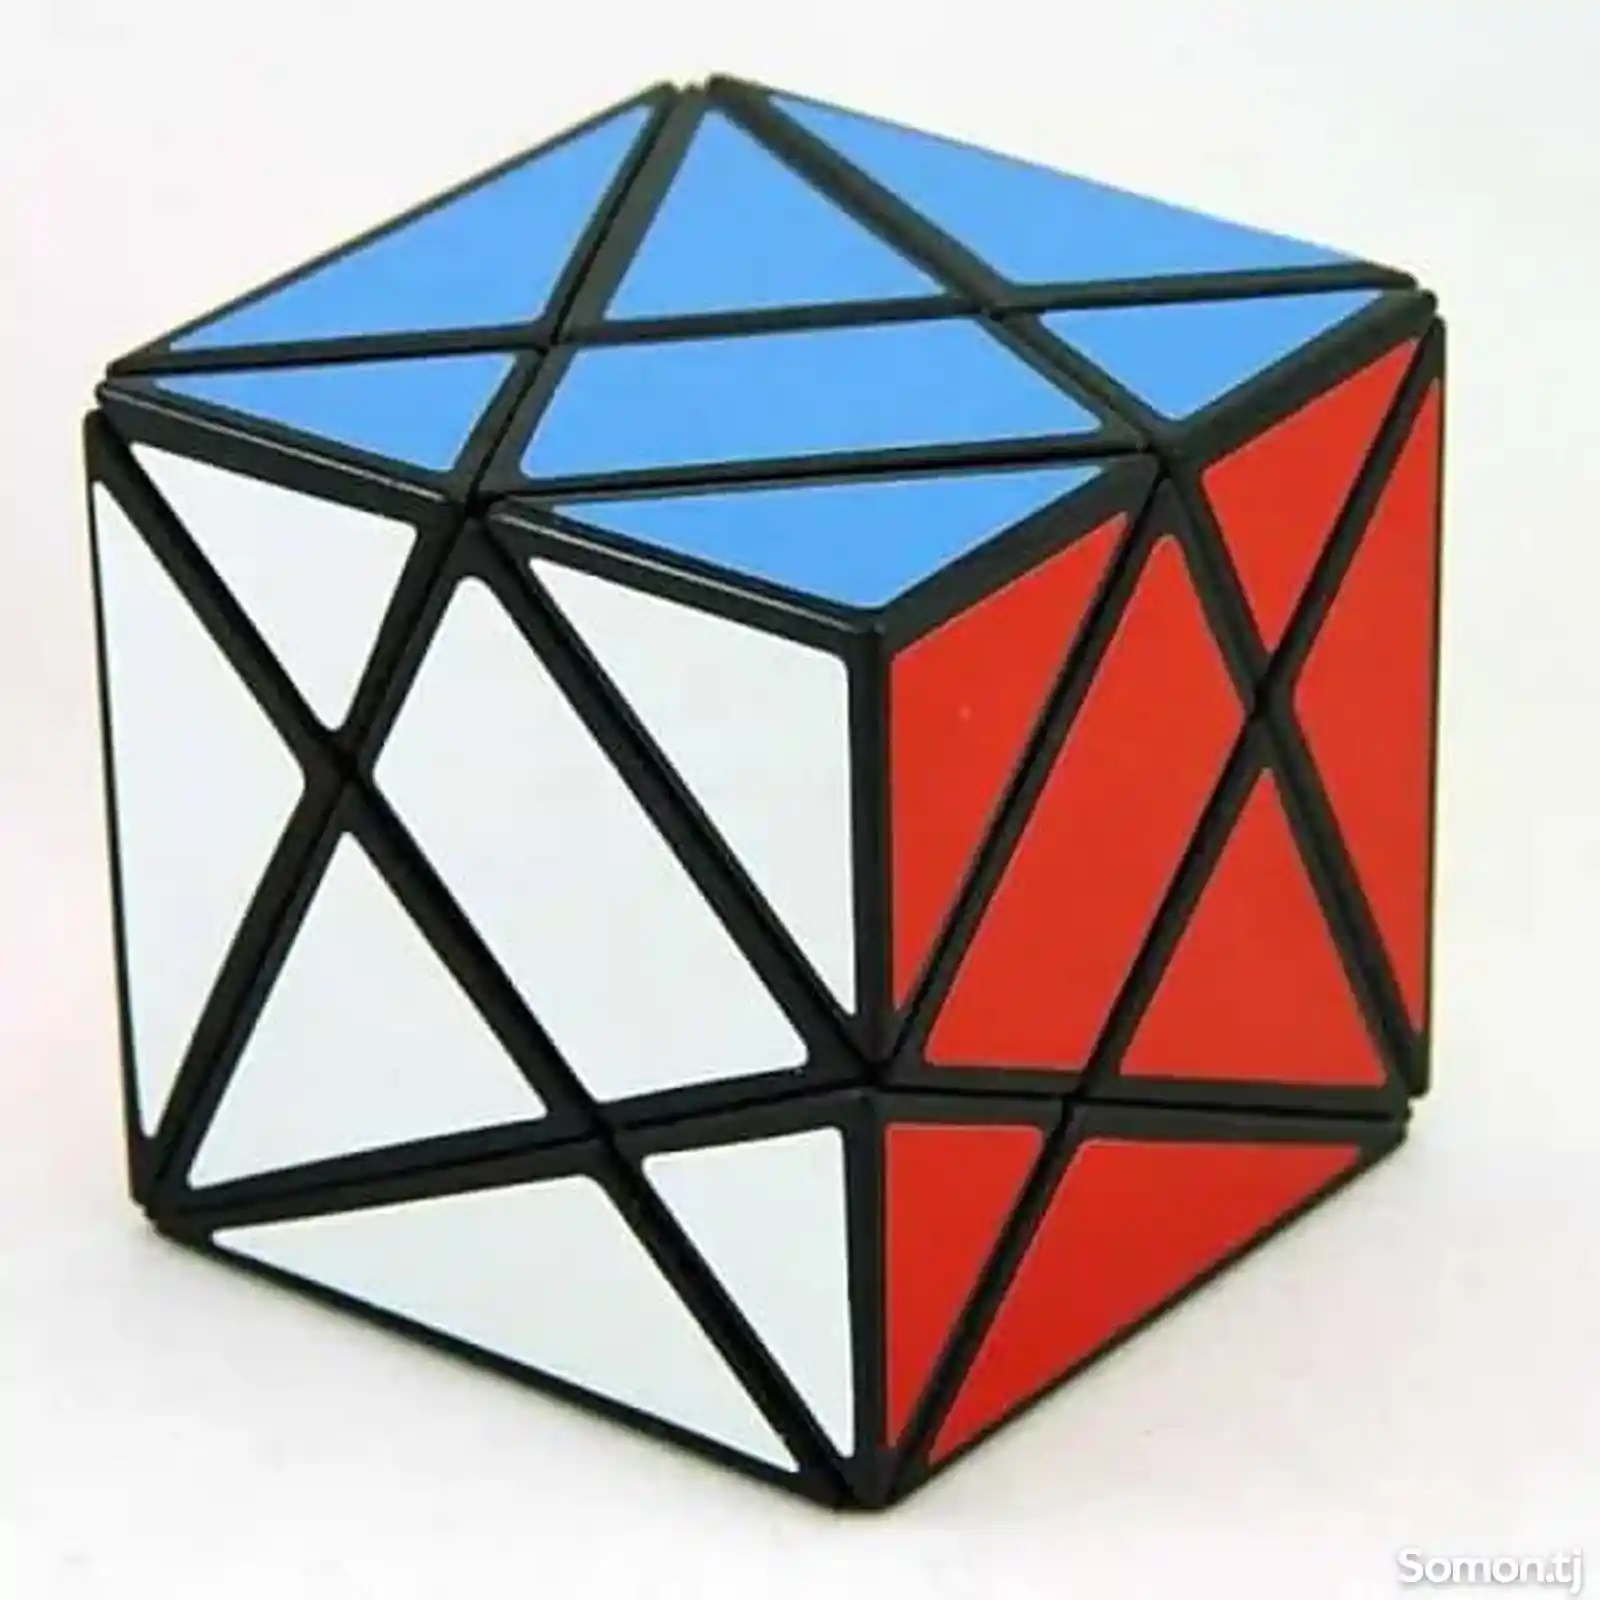 Аксис куб кубика Рубика, Axis cube-2